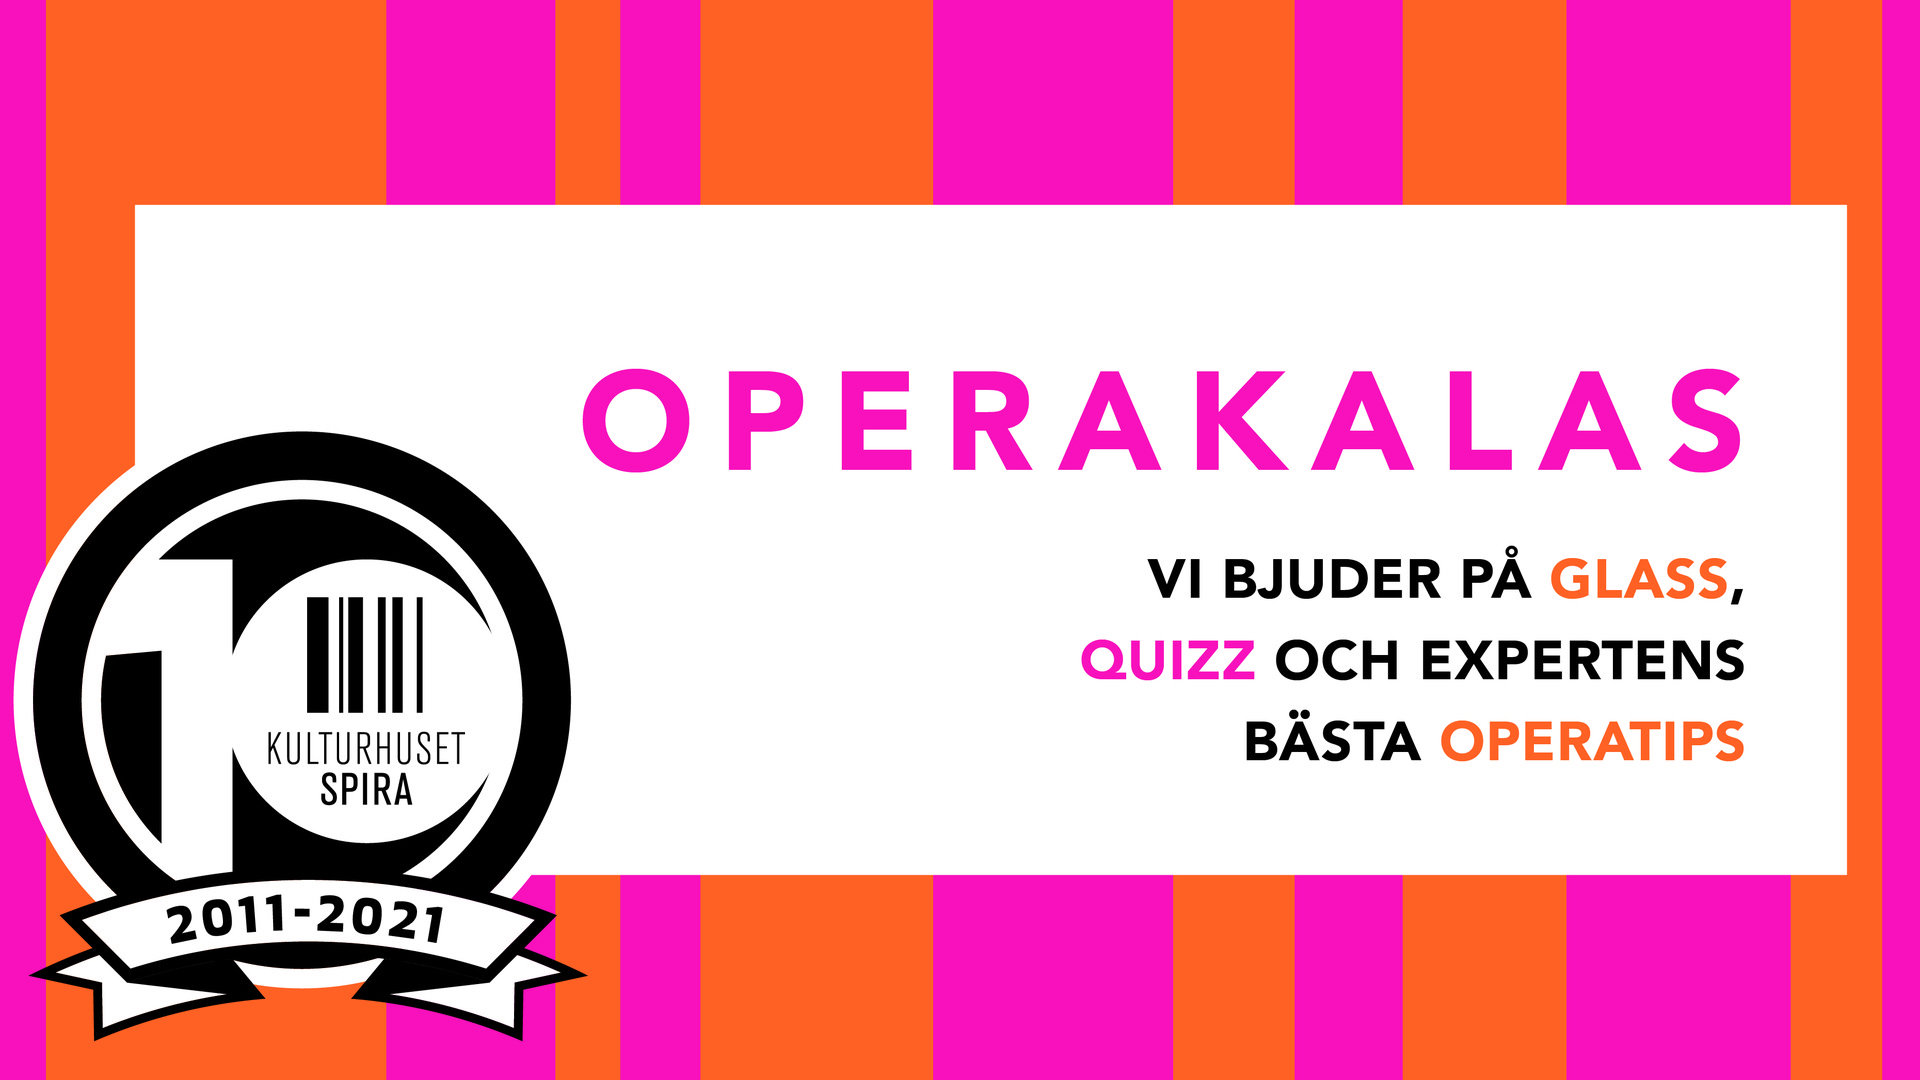 Operakalas på stora torget i Sävsjö. Vi bjuder på glass,quizz och expertens bästa operatips.